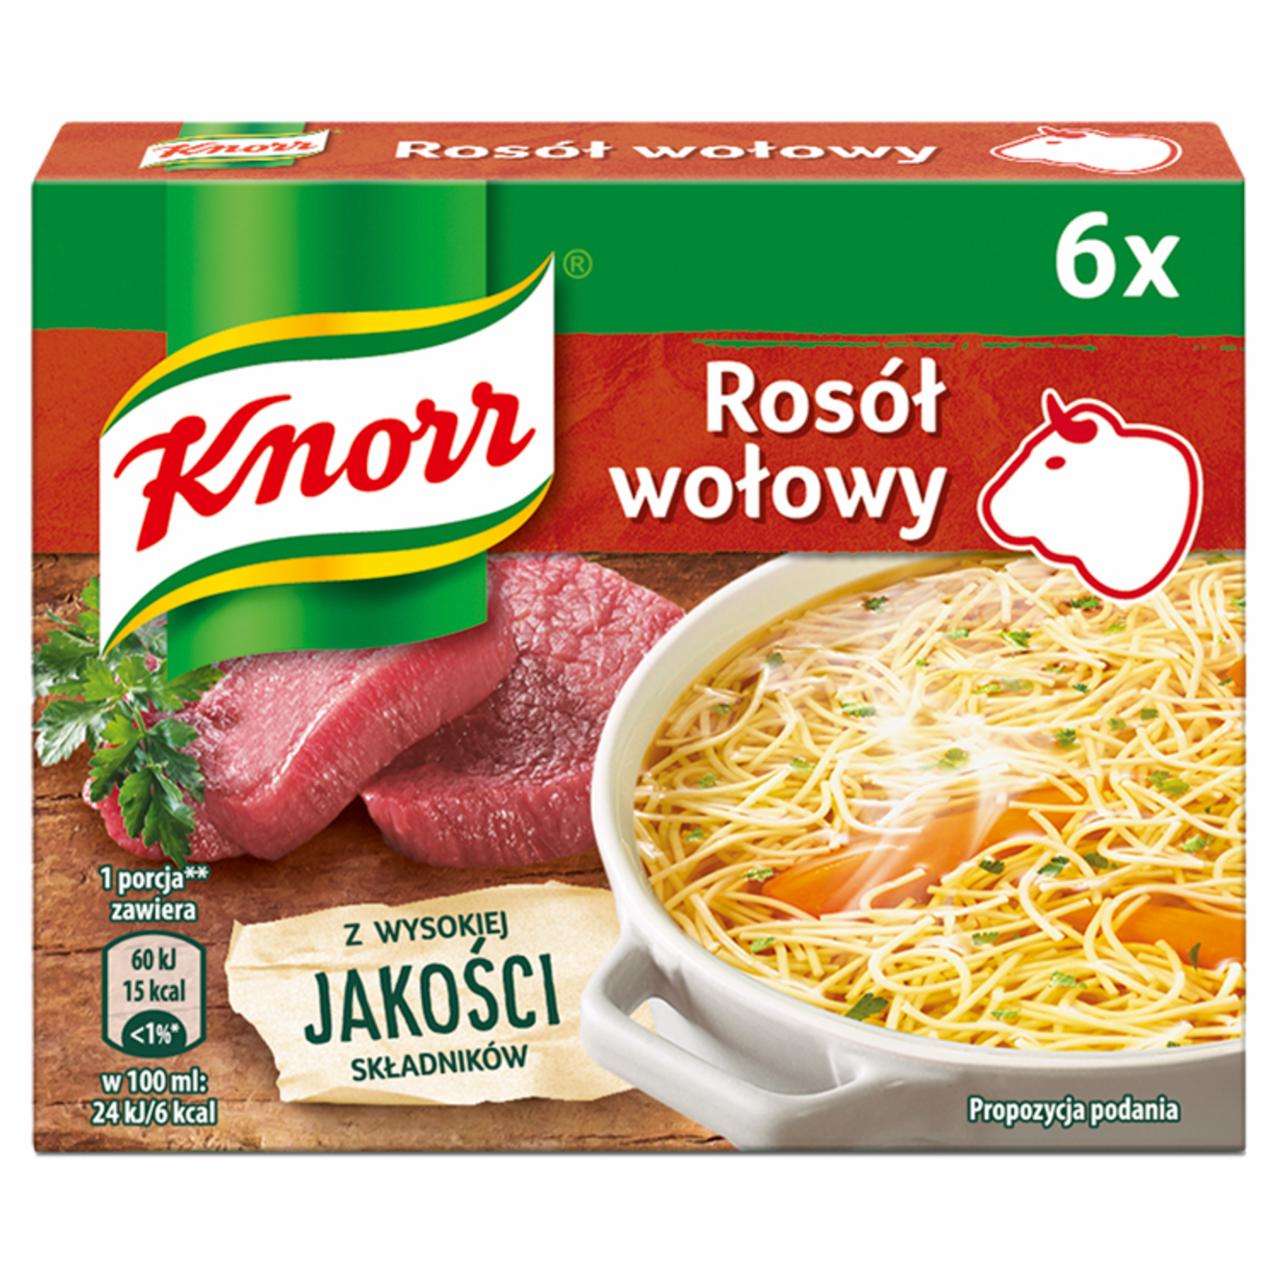 Zdjęcia - Knorr Rosół wołowy 60 g (6 x 10 g)